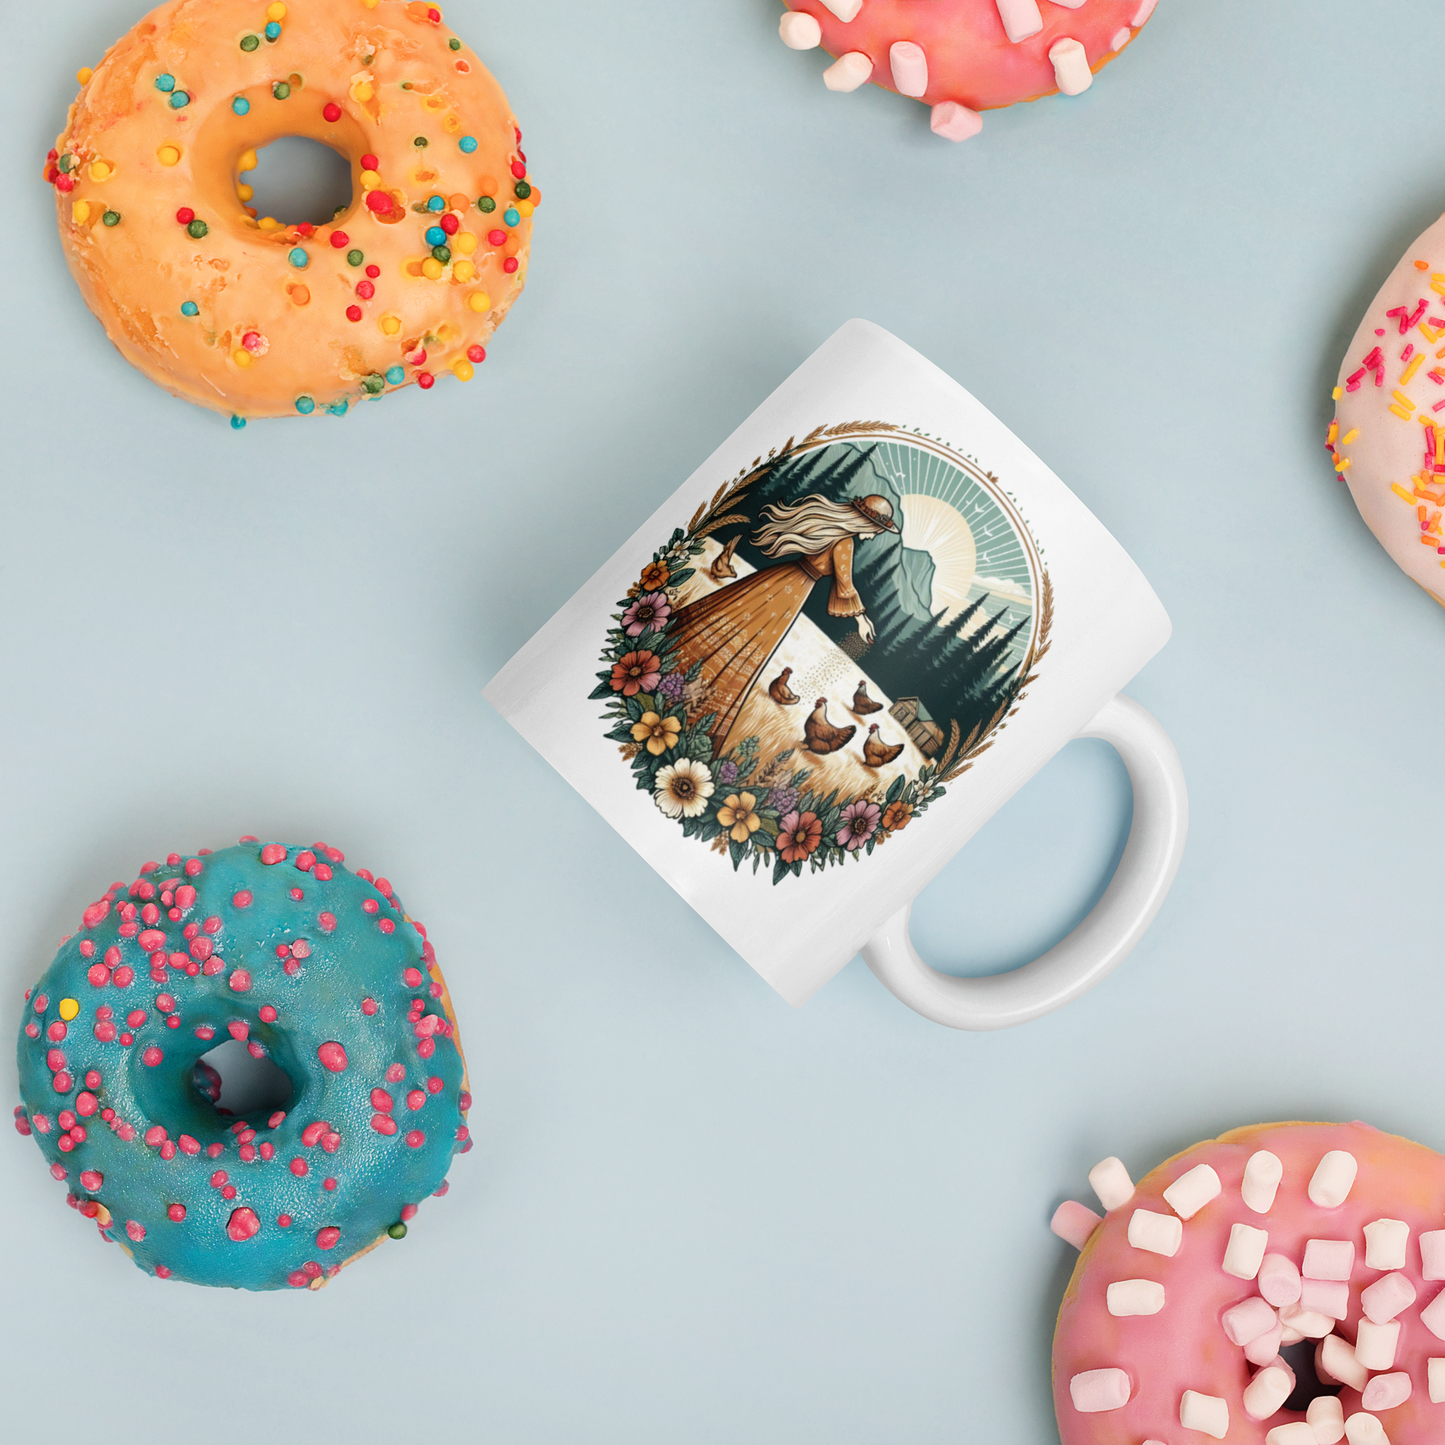 Good Morning Ladies Coffee Mug - Chicken Theme Coffee Mug